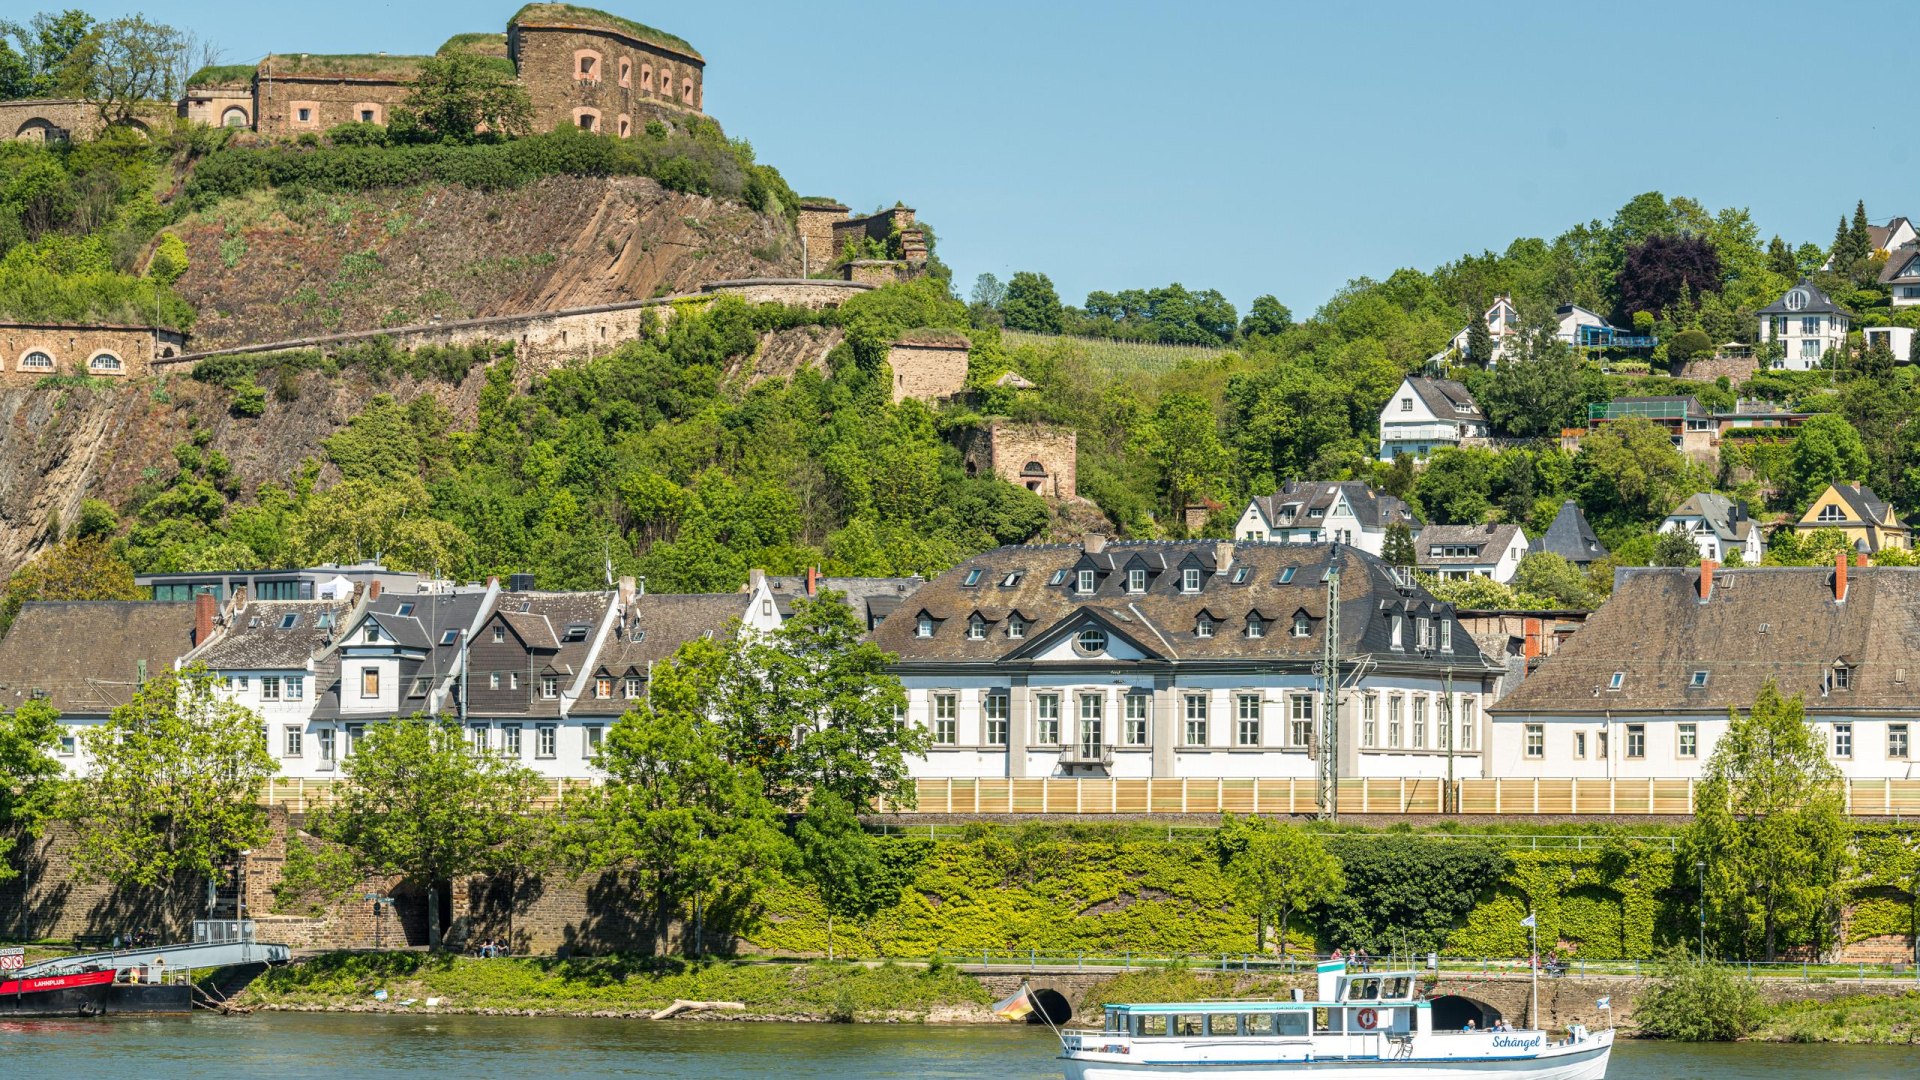 Fähre mit Festung | © Koblenz-Touristik GmbH / Dominik Ketz